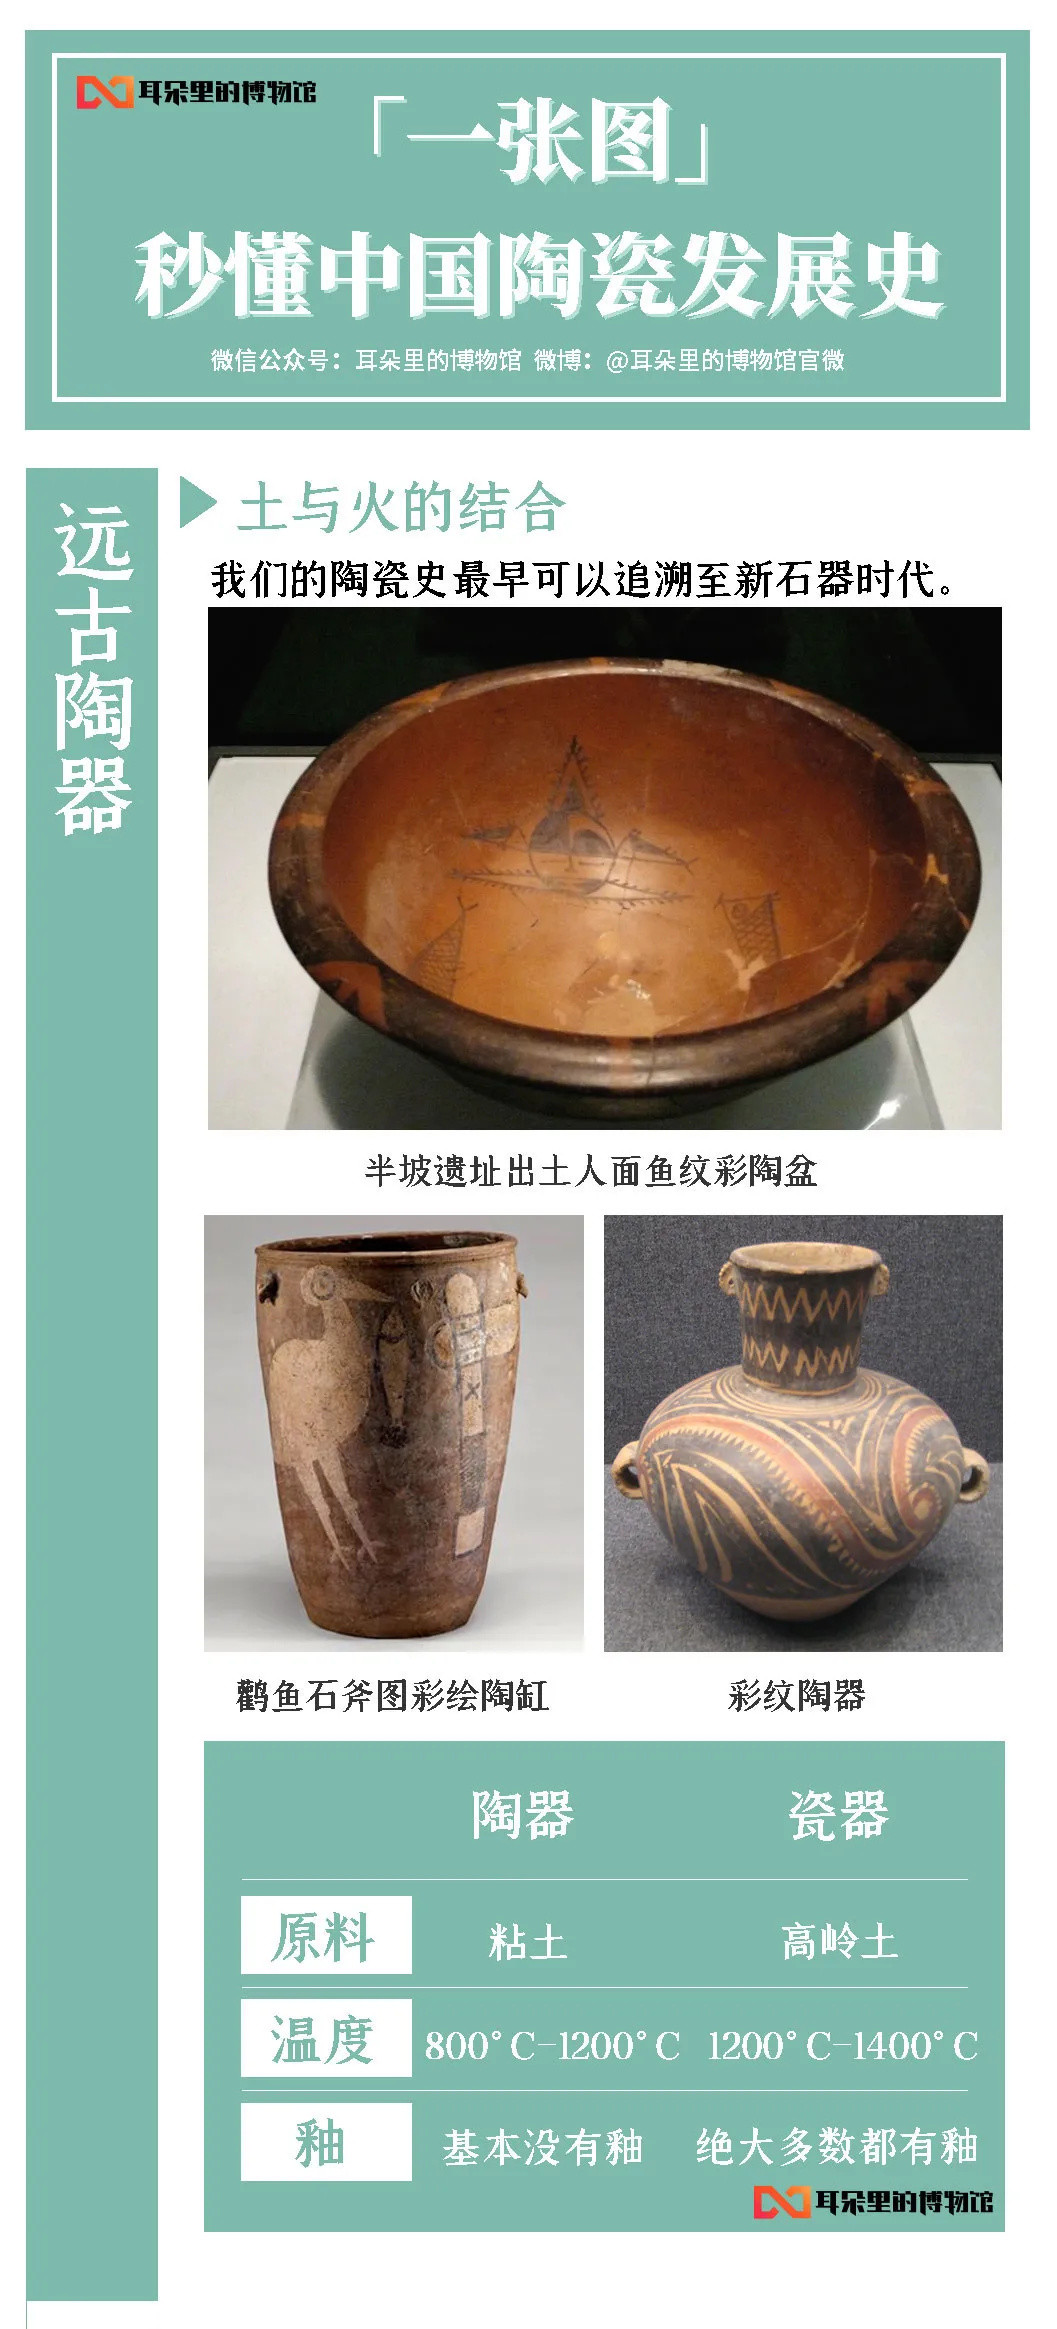 2.6565亿元！乾隆瓷器创最贵瓷器记录！「一张图」带你看懂中国陶瓷发展史